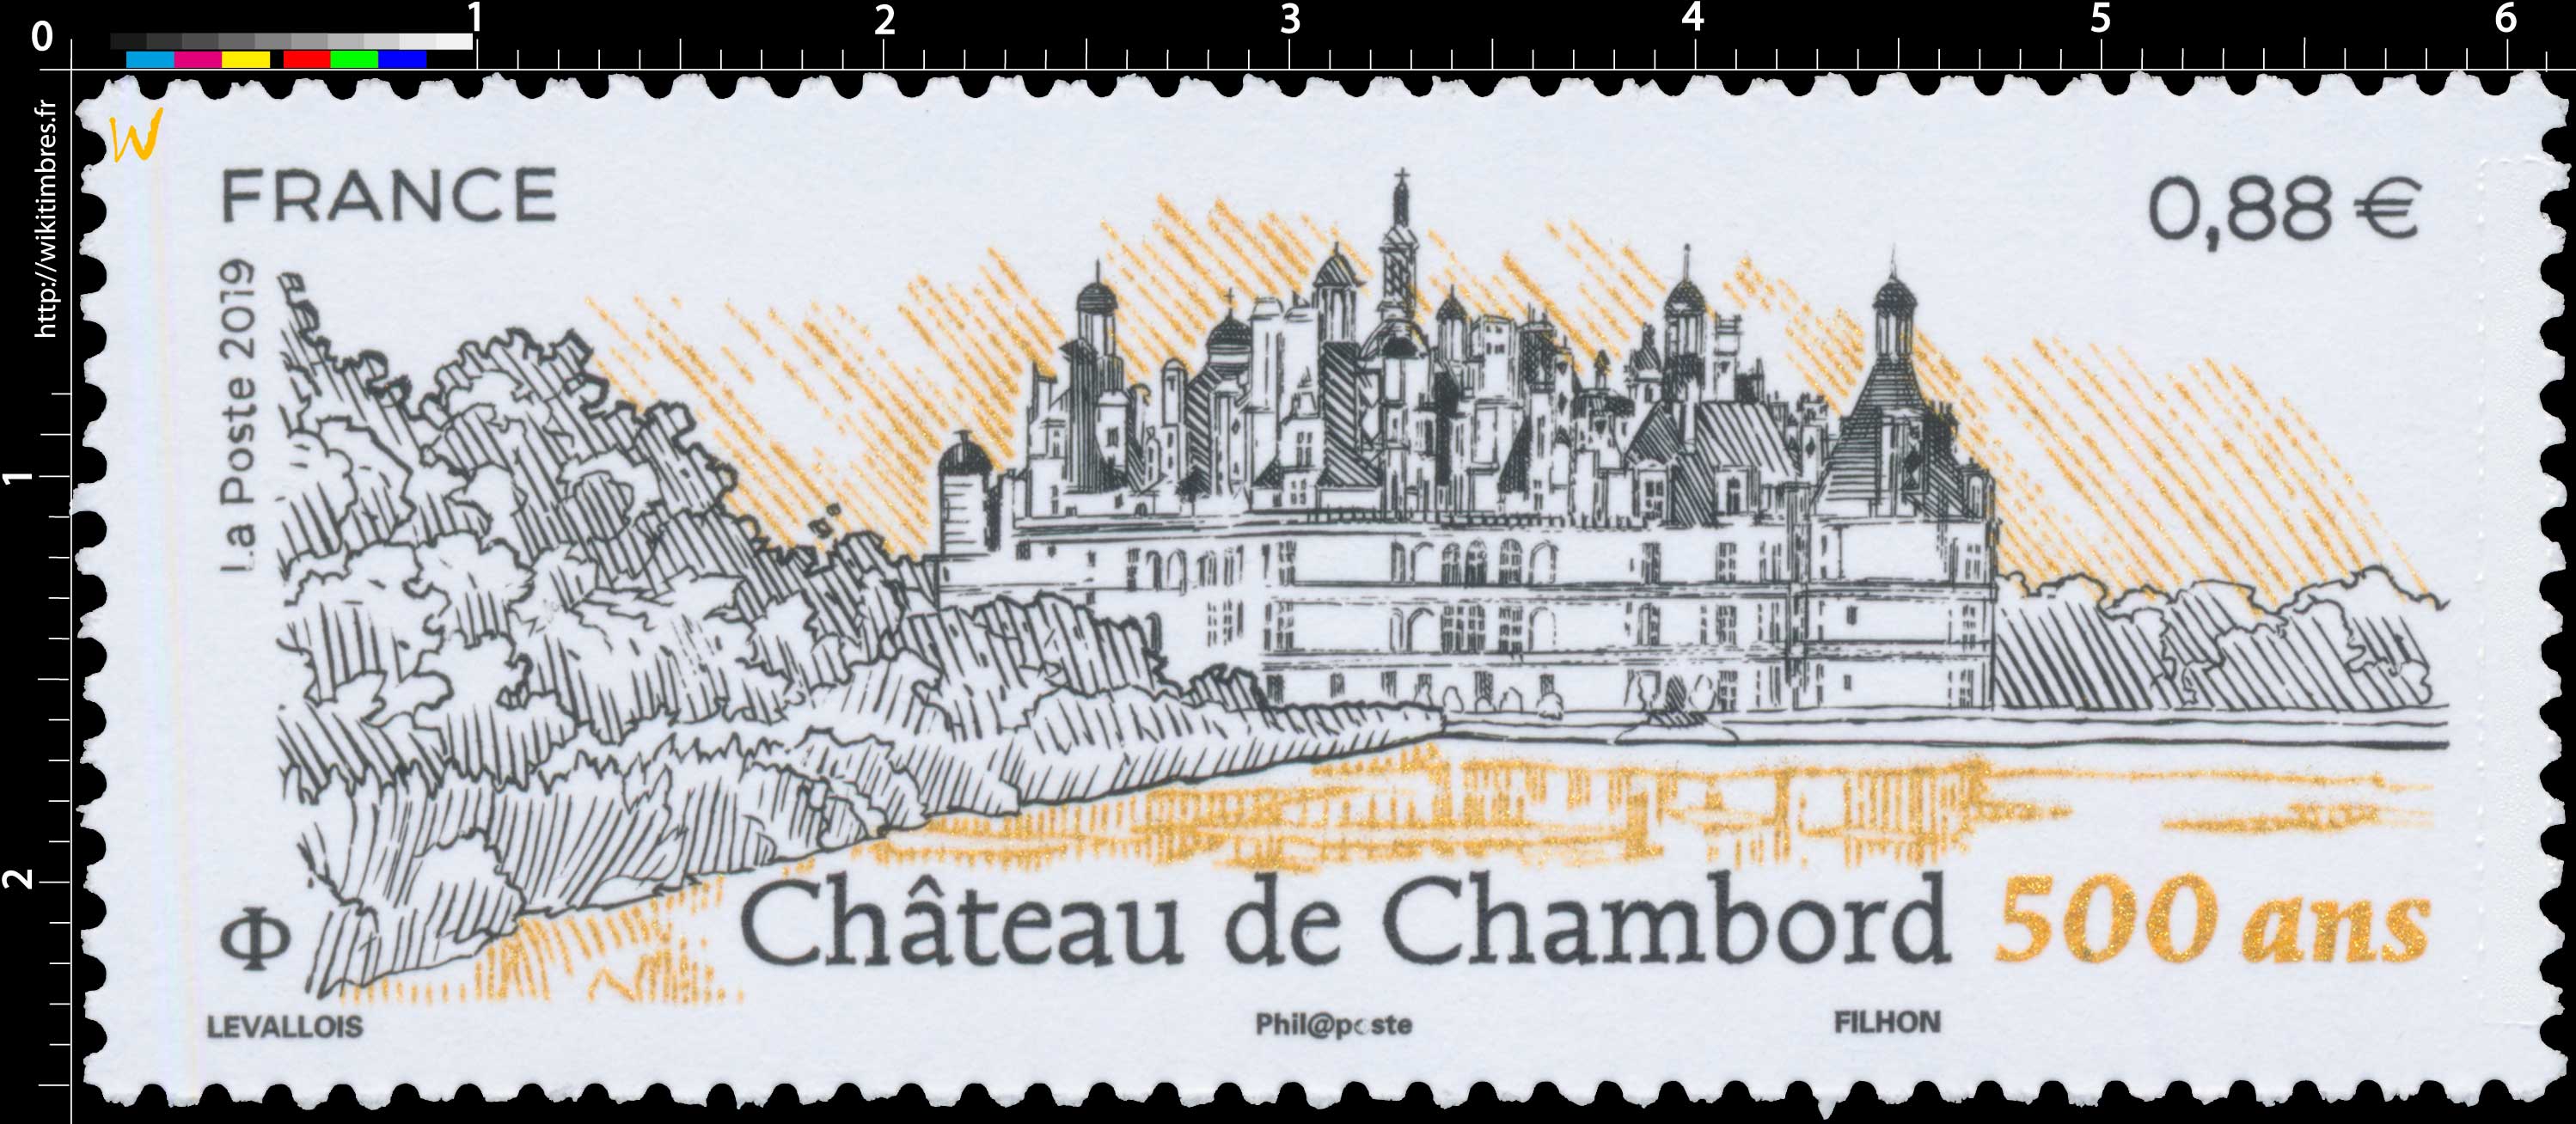 2019 CHÂTEAU DE CHAMBORD 500 ANS